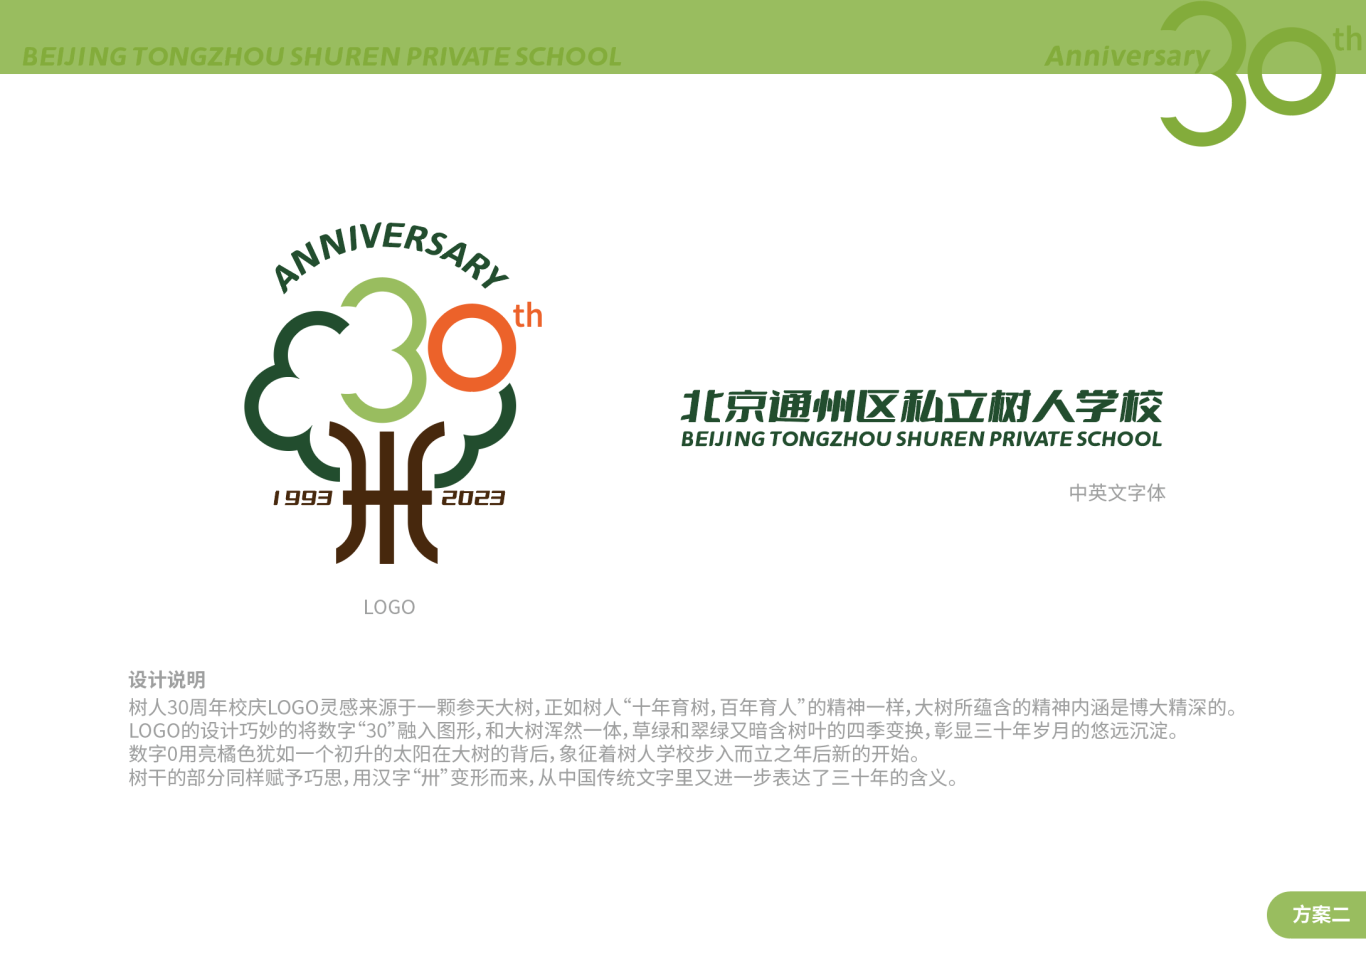 北京通州區私立樹人學校30周年校慶logo圖2